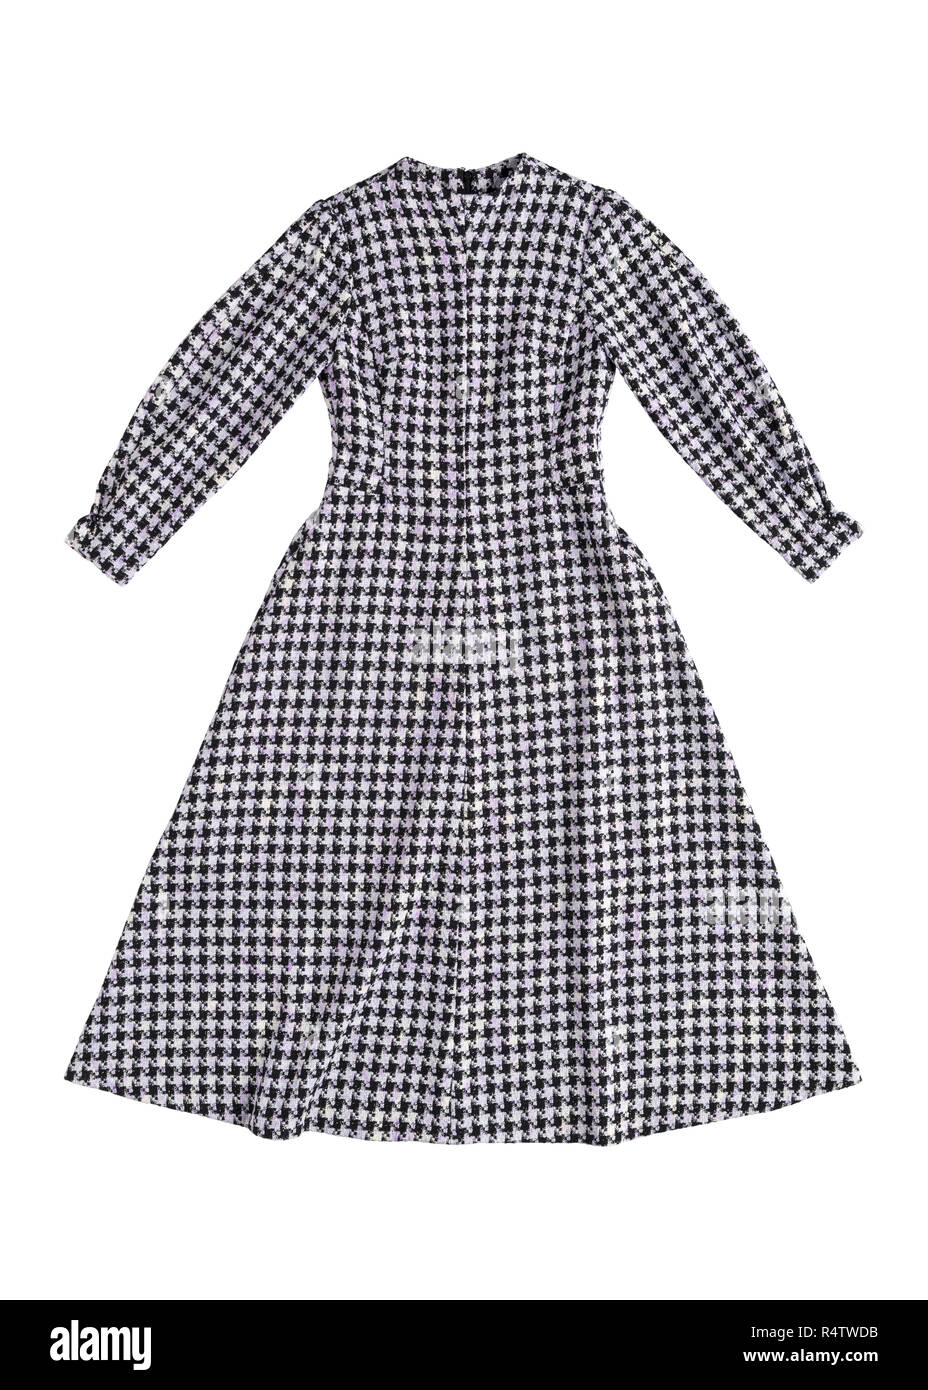 Calentar la vestimenta femenina con un patrón de tablero de ajedrez sobre un fondo blanco. Foto de stock